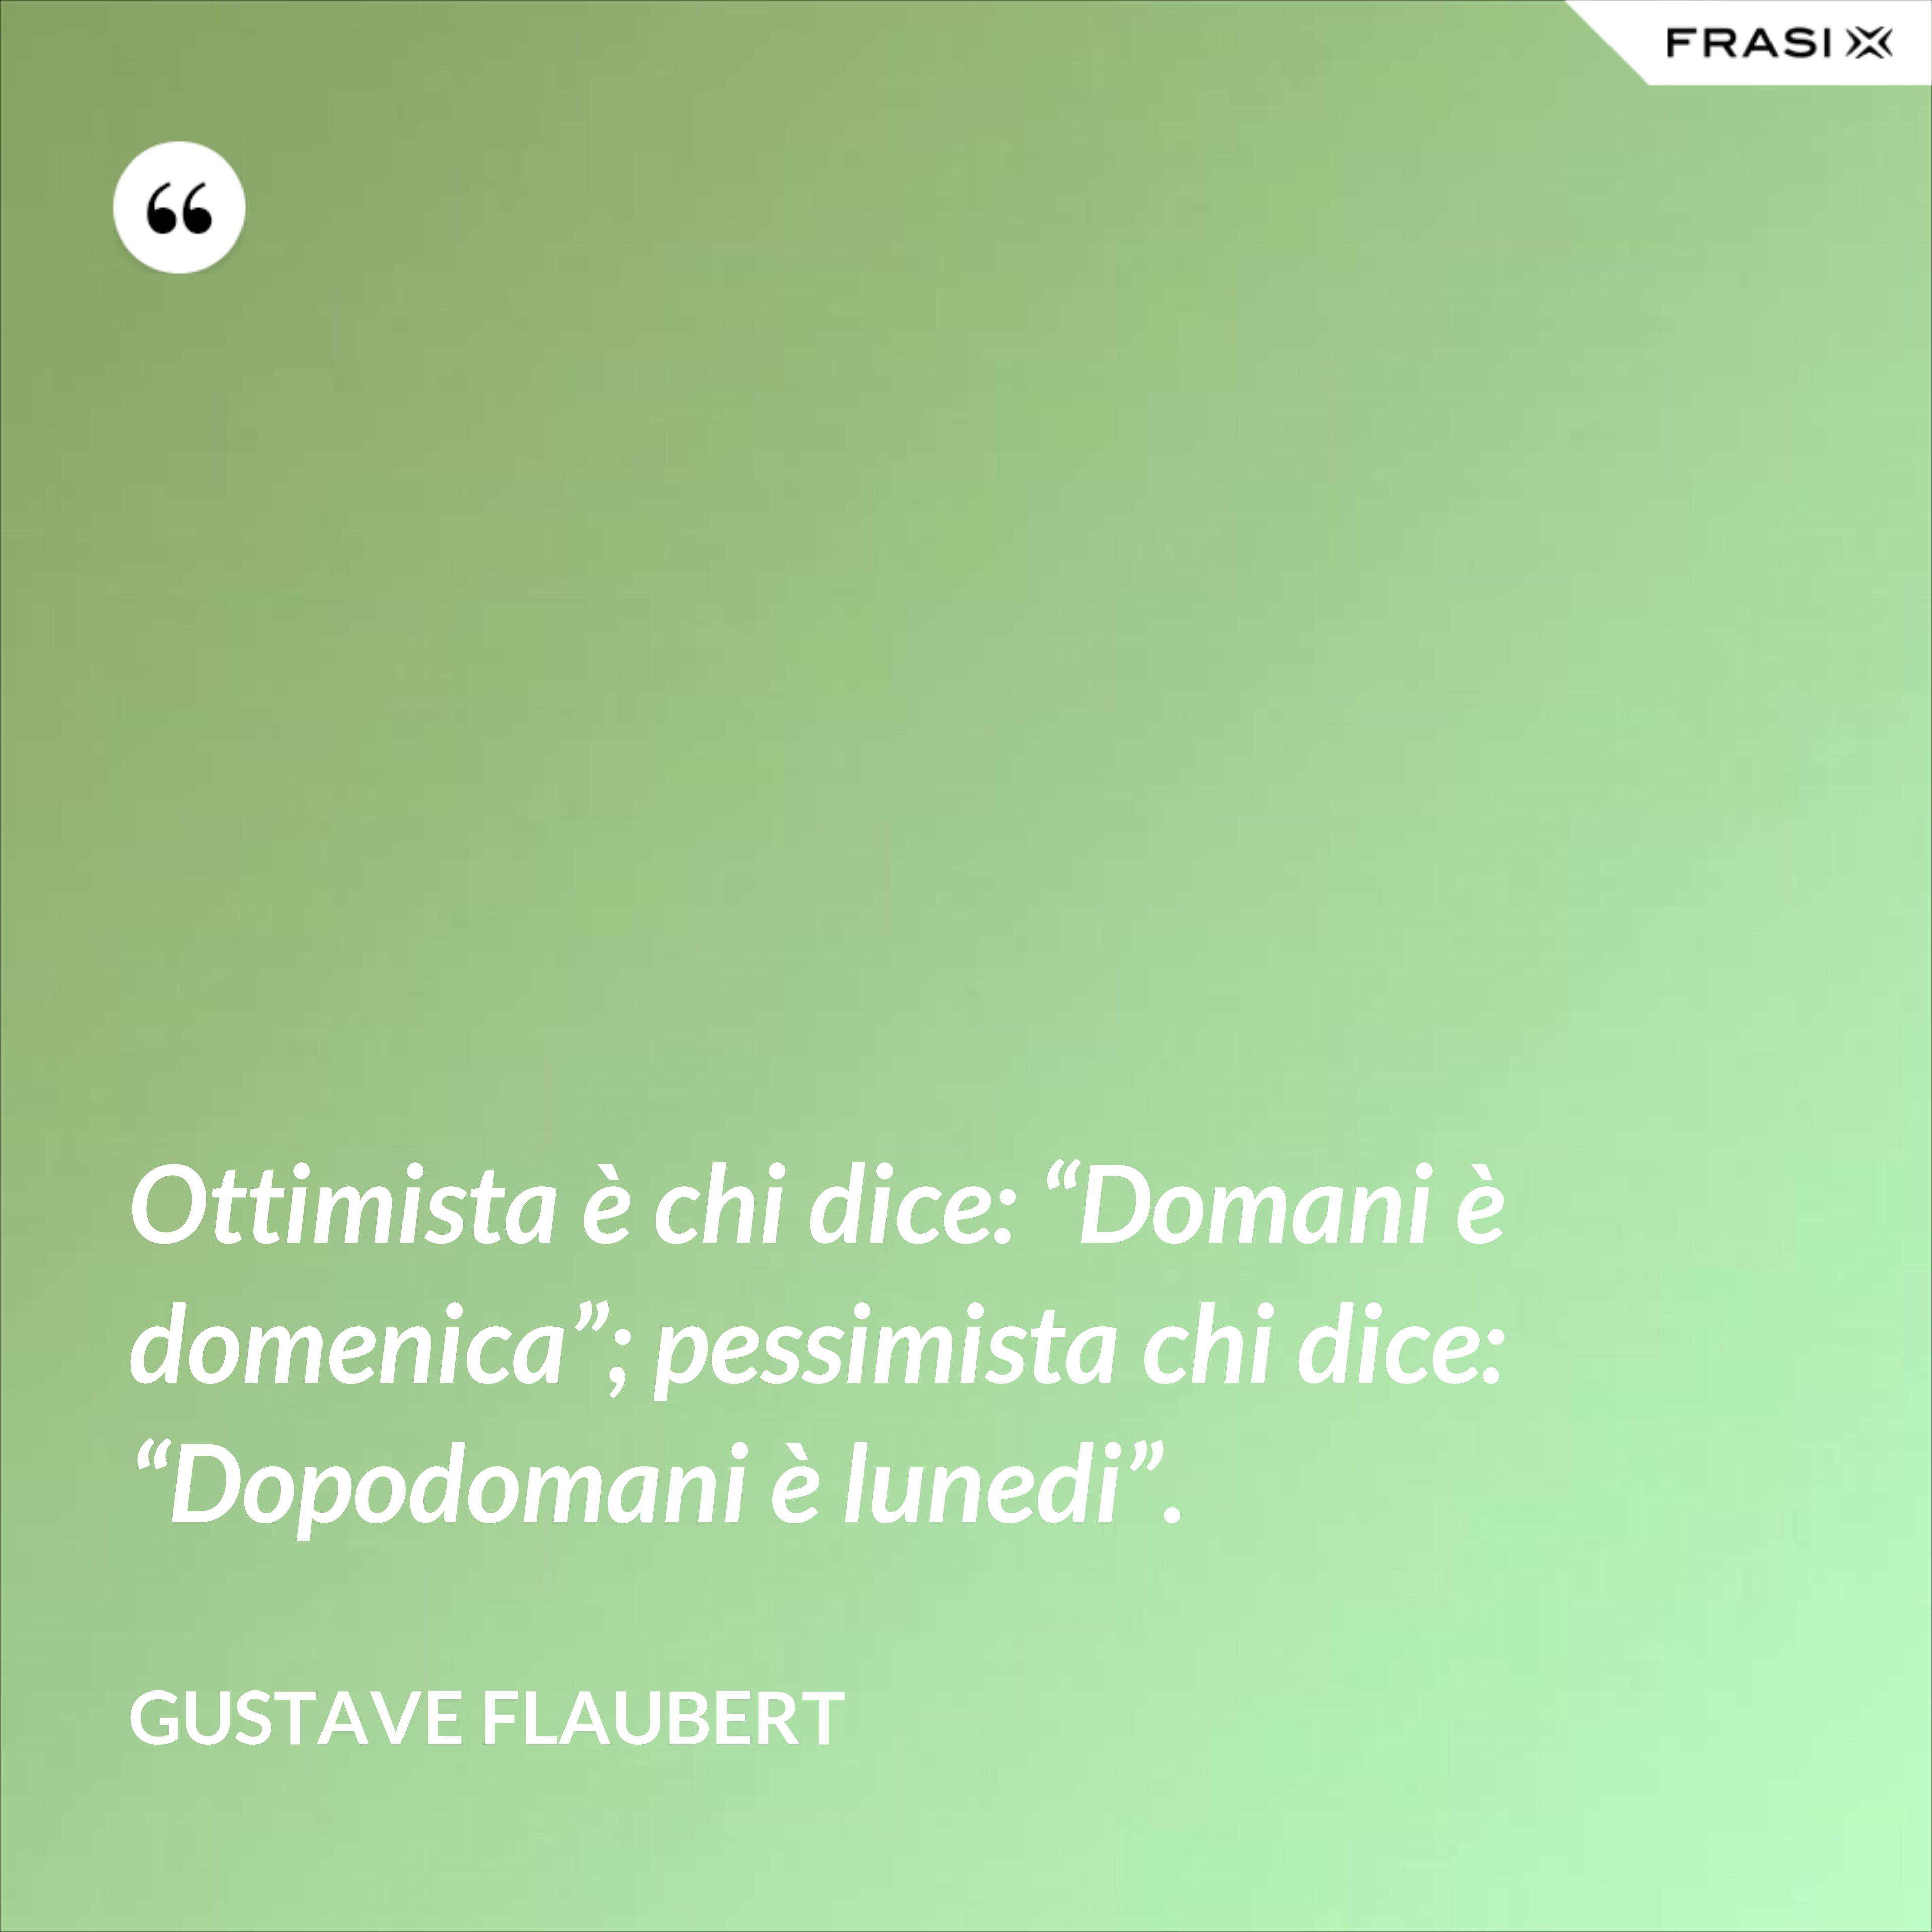 Ottimista è chi dice: “Domani è domenica”; pessimista chi dice: “Dopodomani è lunedi”. - Gustave Flaubert